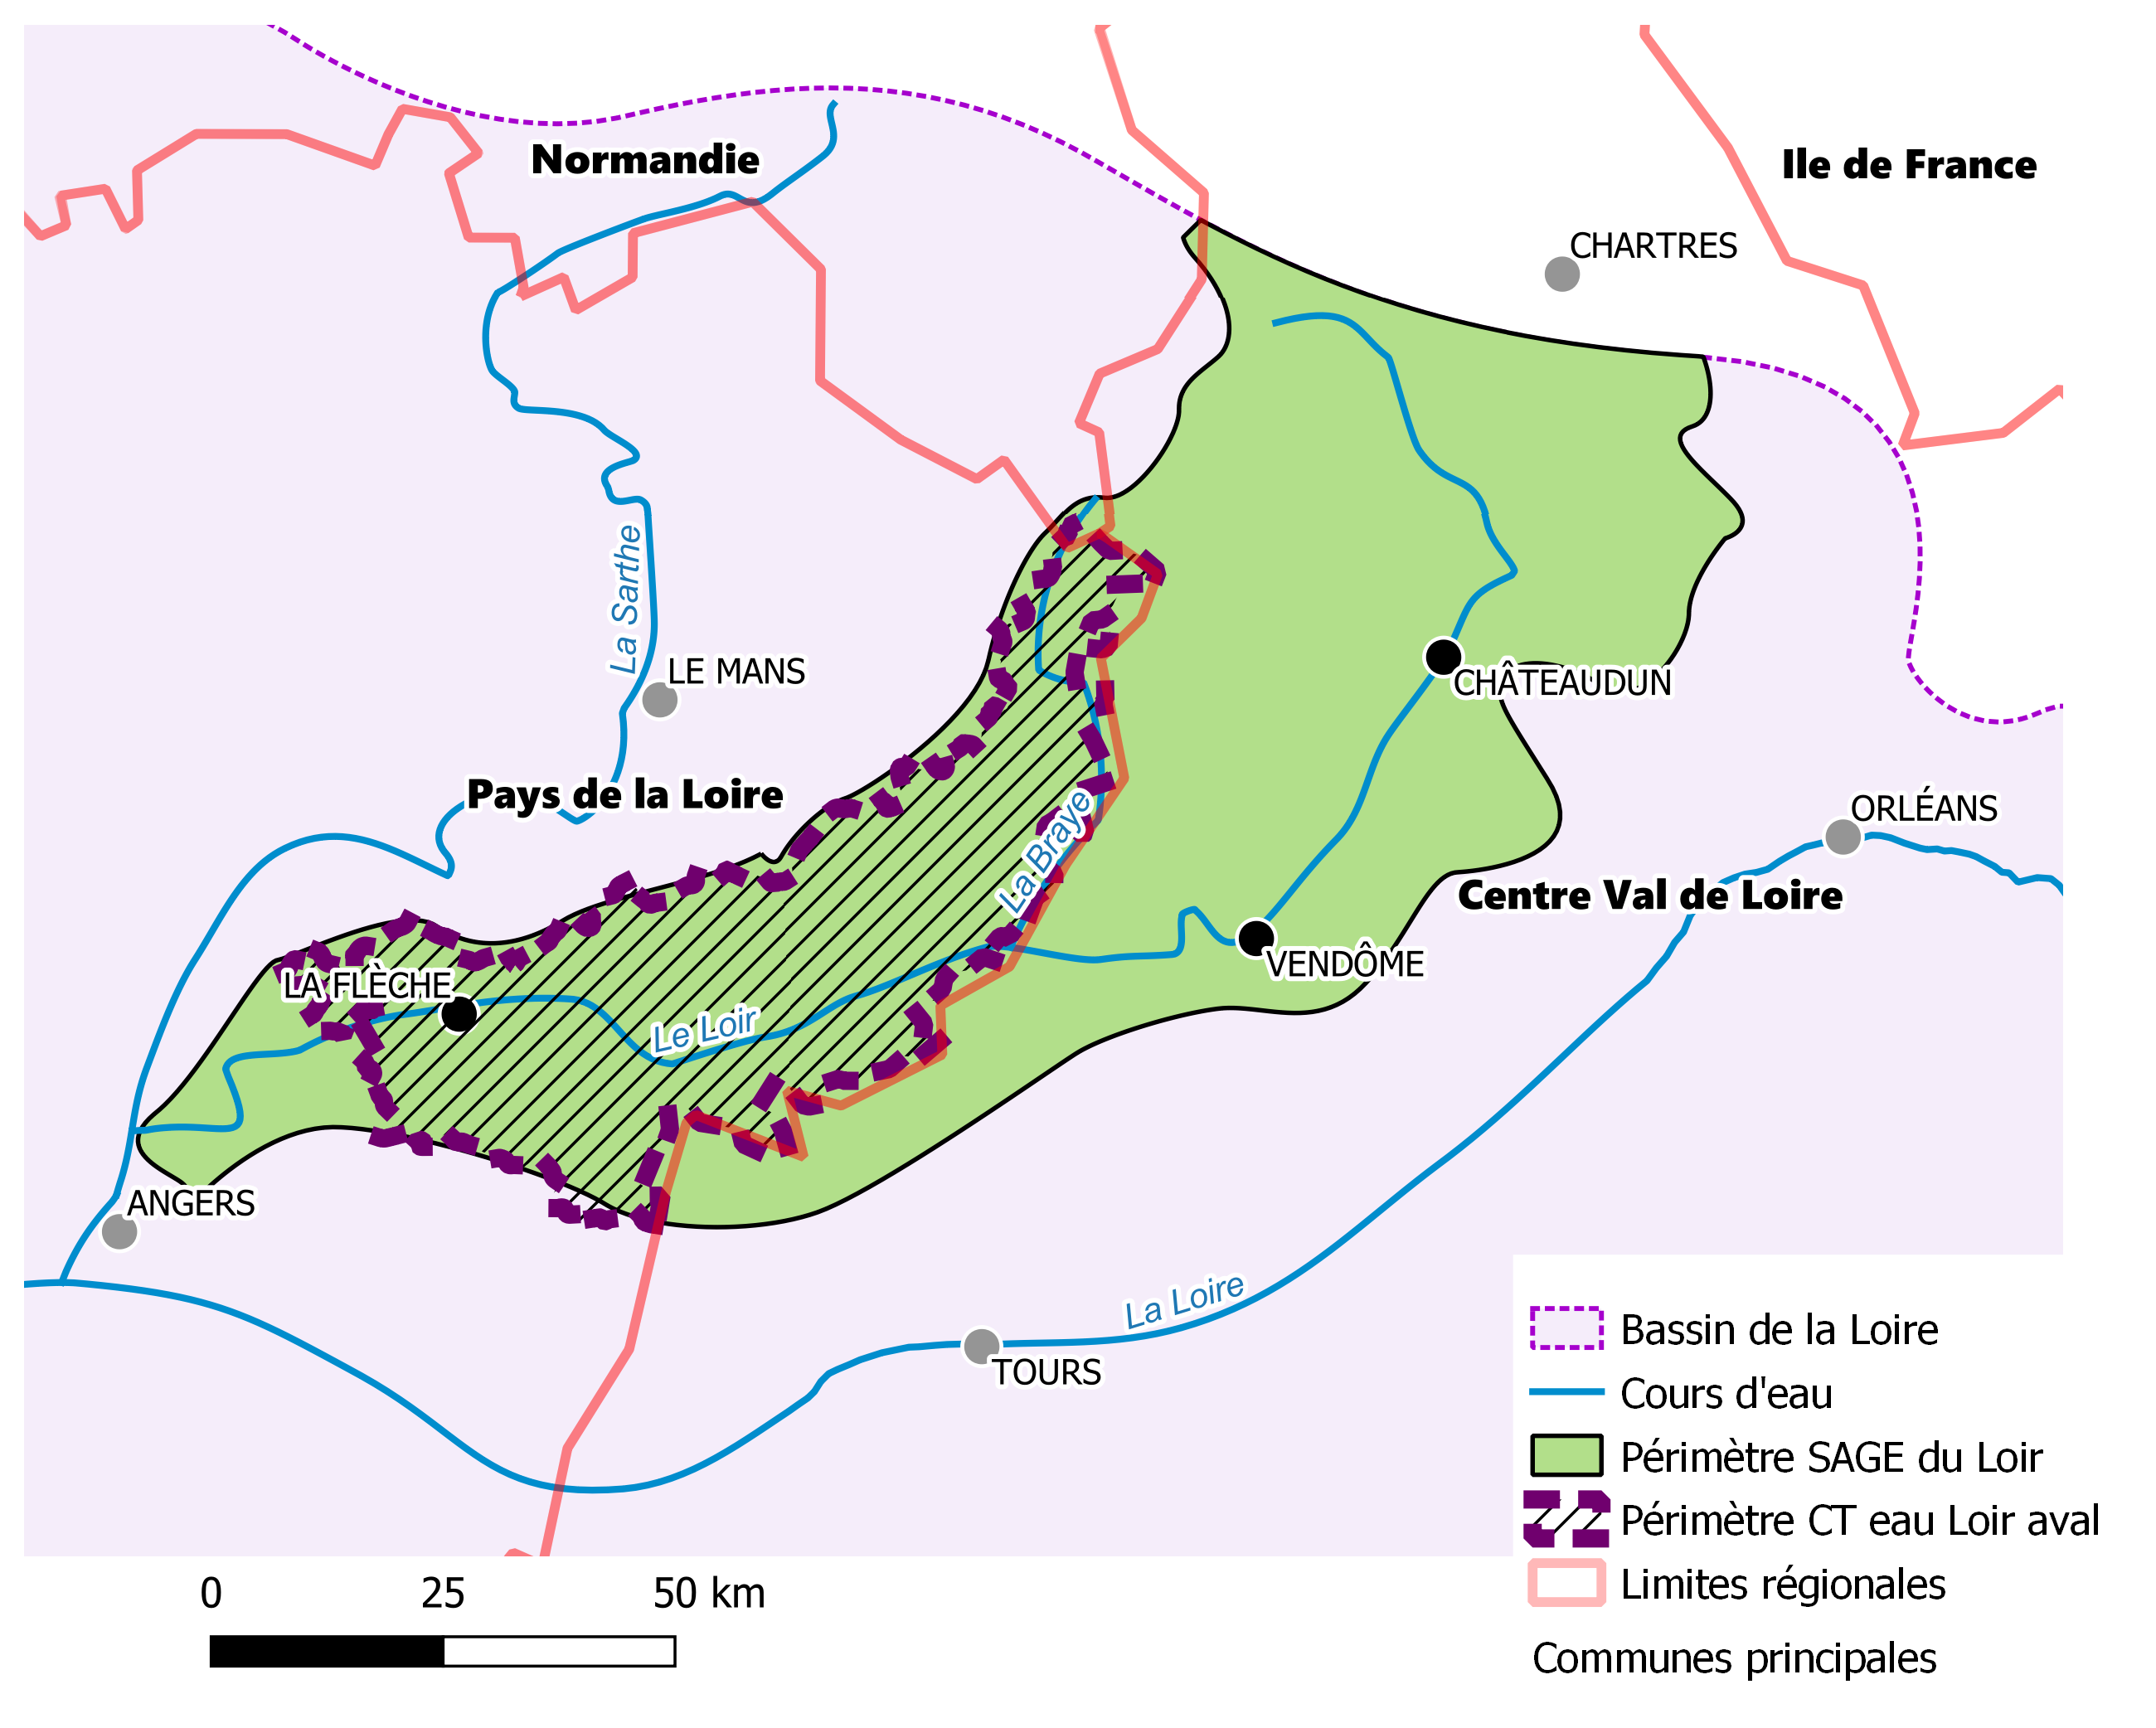 Périmètre du CT Eau Loir aval 2022-2024